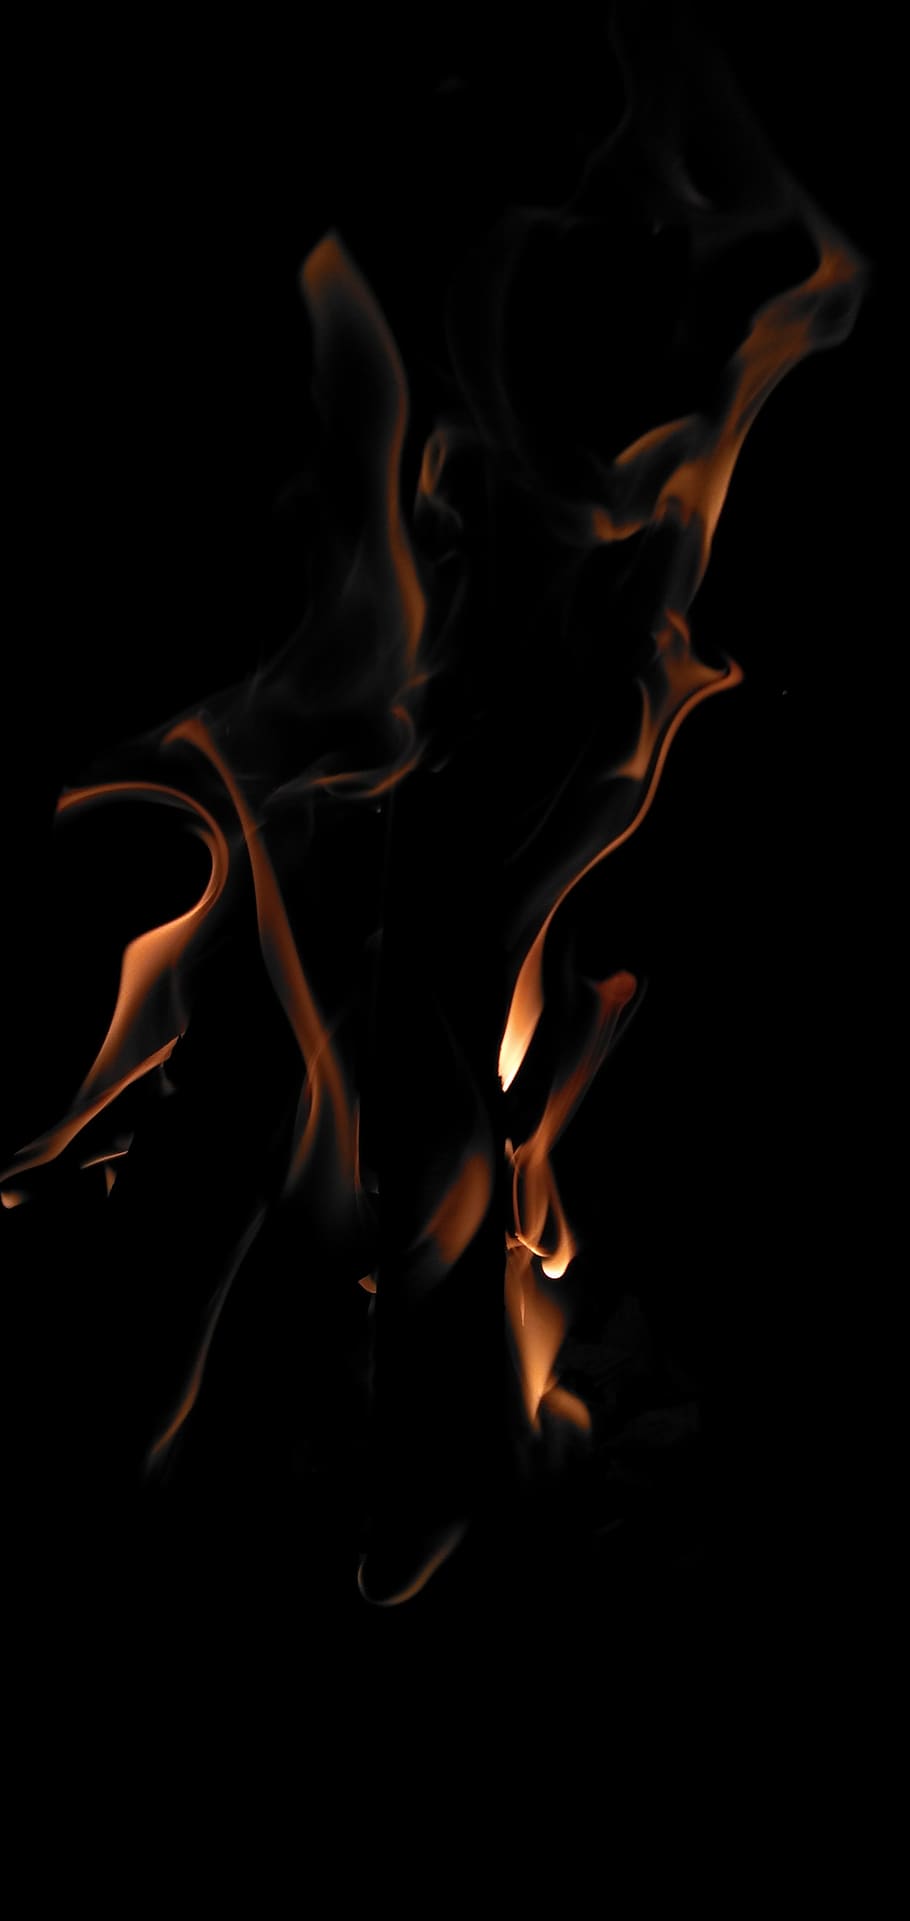 fogo, chama, calor, quente, lareira, queimar, queima, ardente, fundo preto, fogo - fenômeno natural